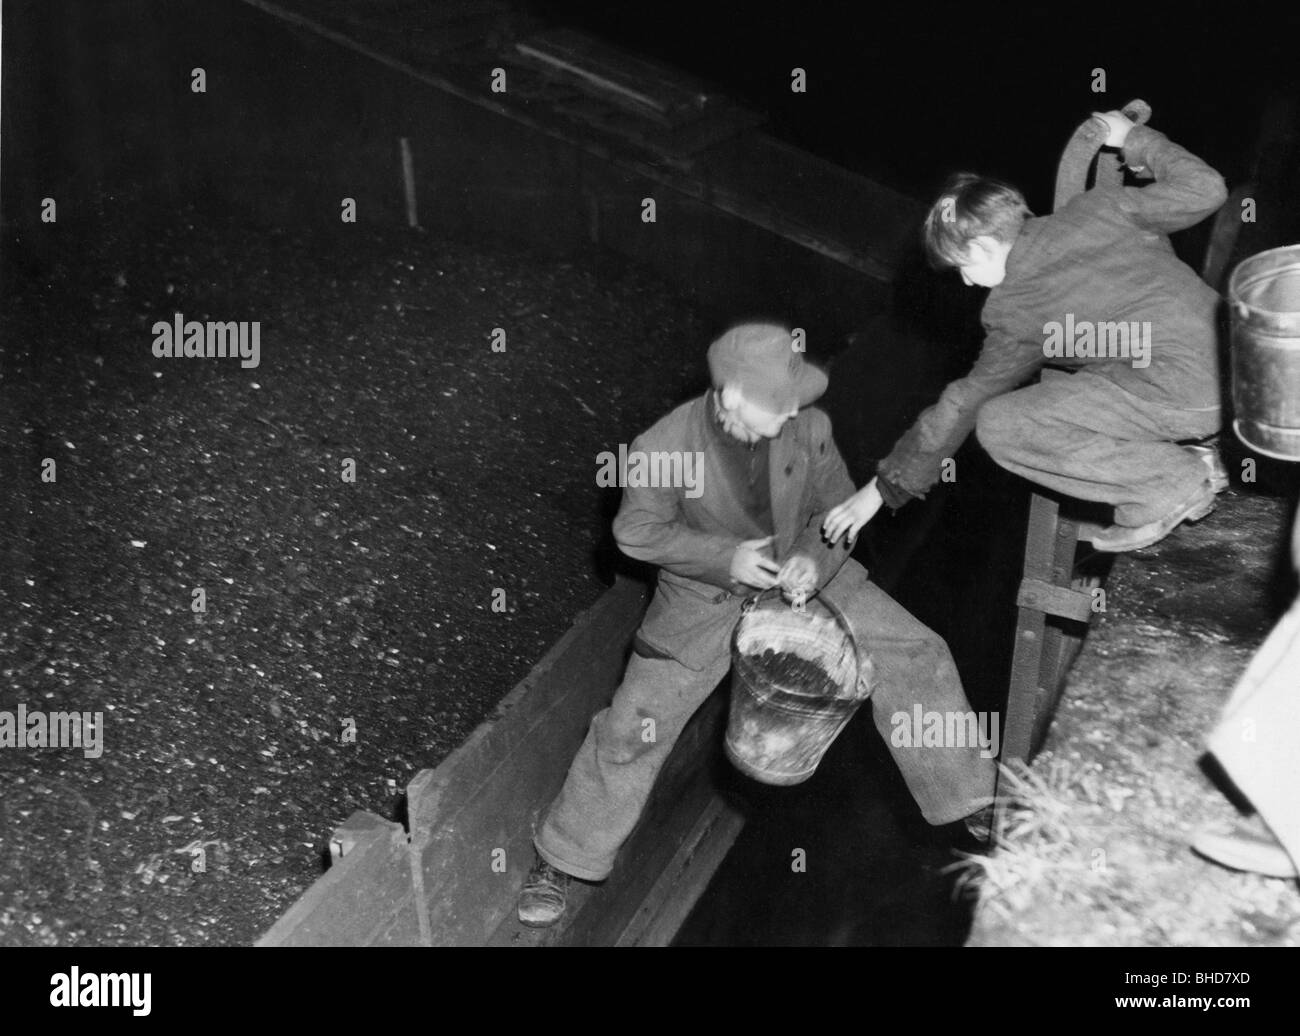 período de posguerra, penurias, miseria y hambre, dos hombres jóvenes robando carbón, 1940, Foto de stock